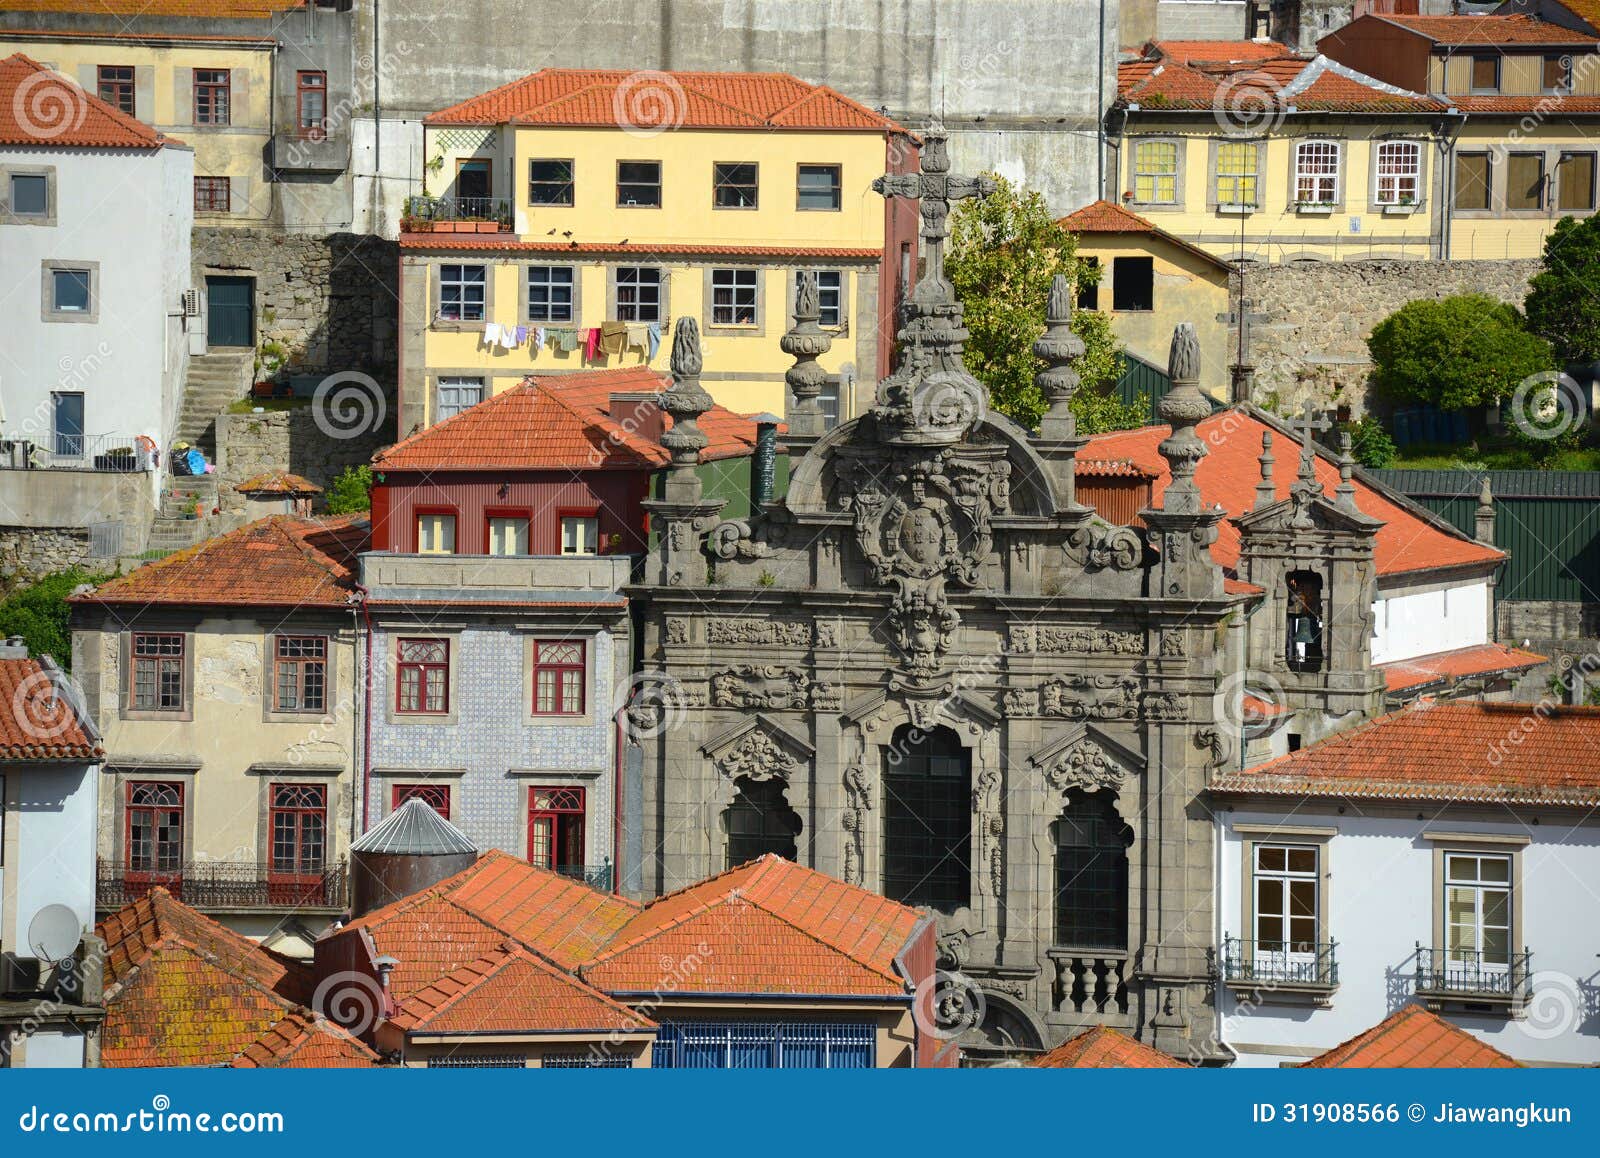 igreja da misericordia, porto old city, portugal